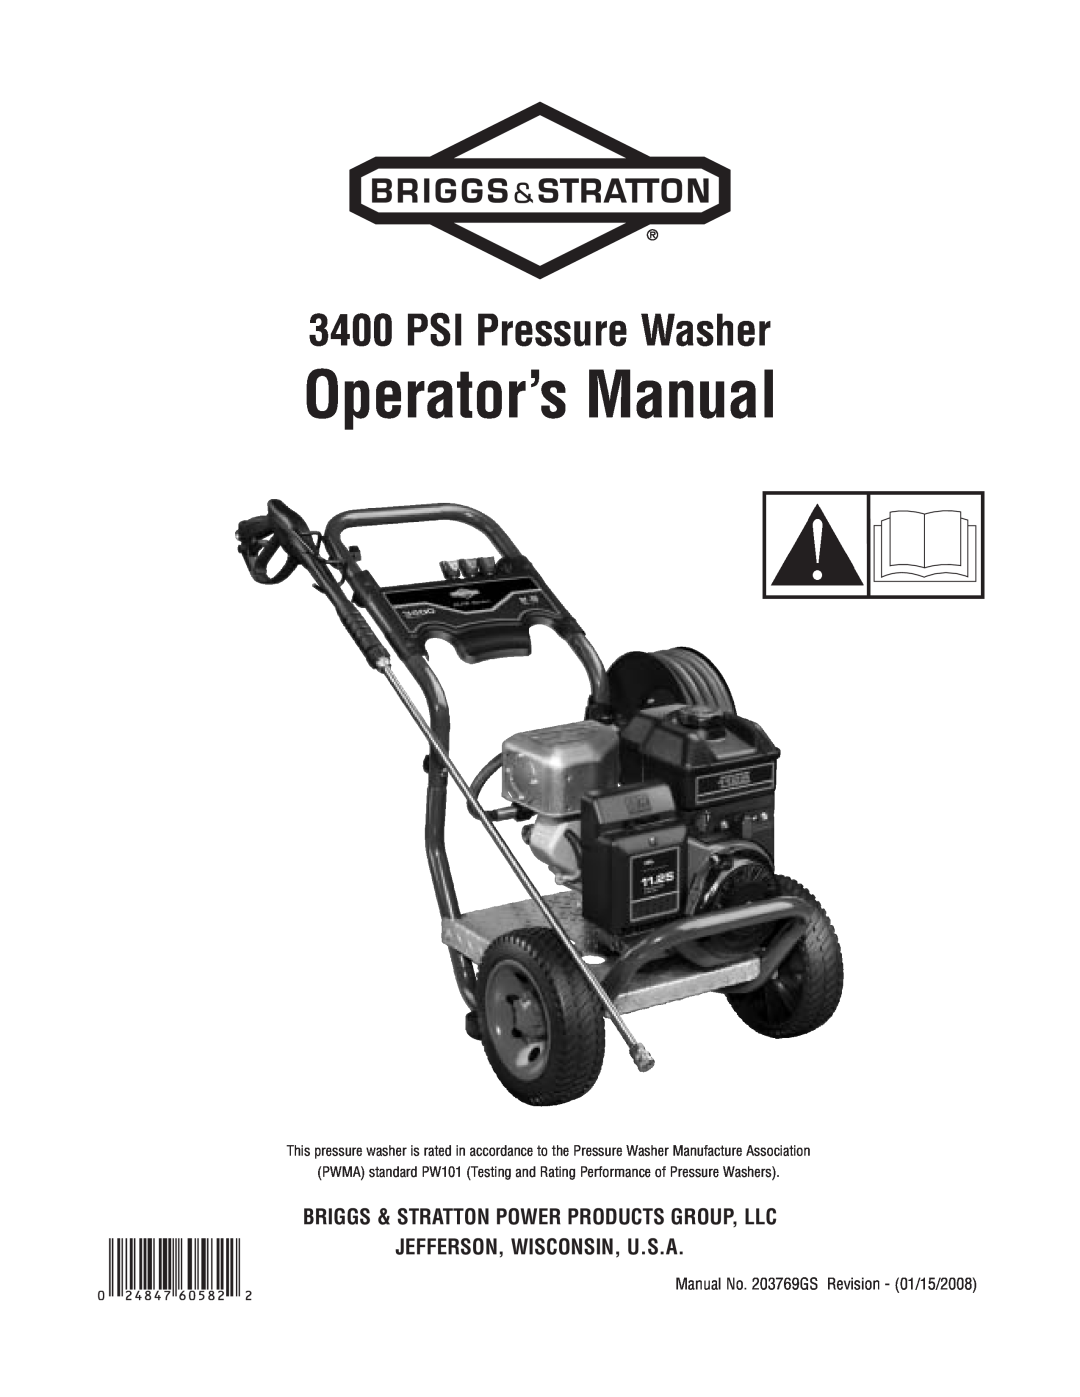 Briggs & Stratton 020364-0 manual Operator’s Manual, PSI Pressure Washer 